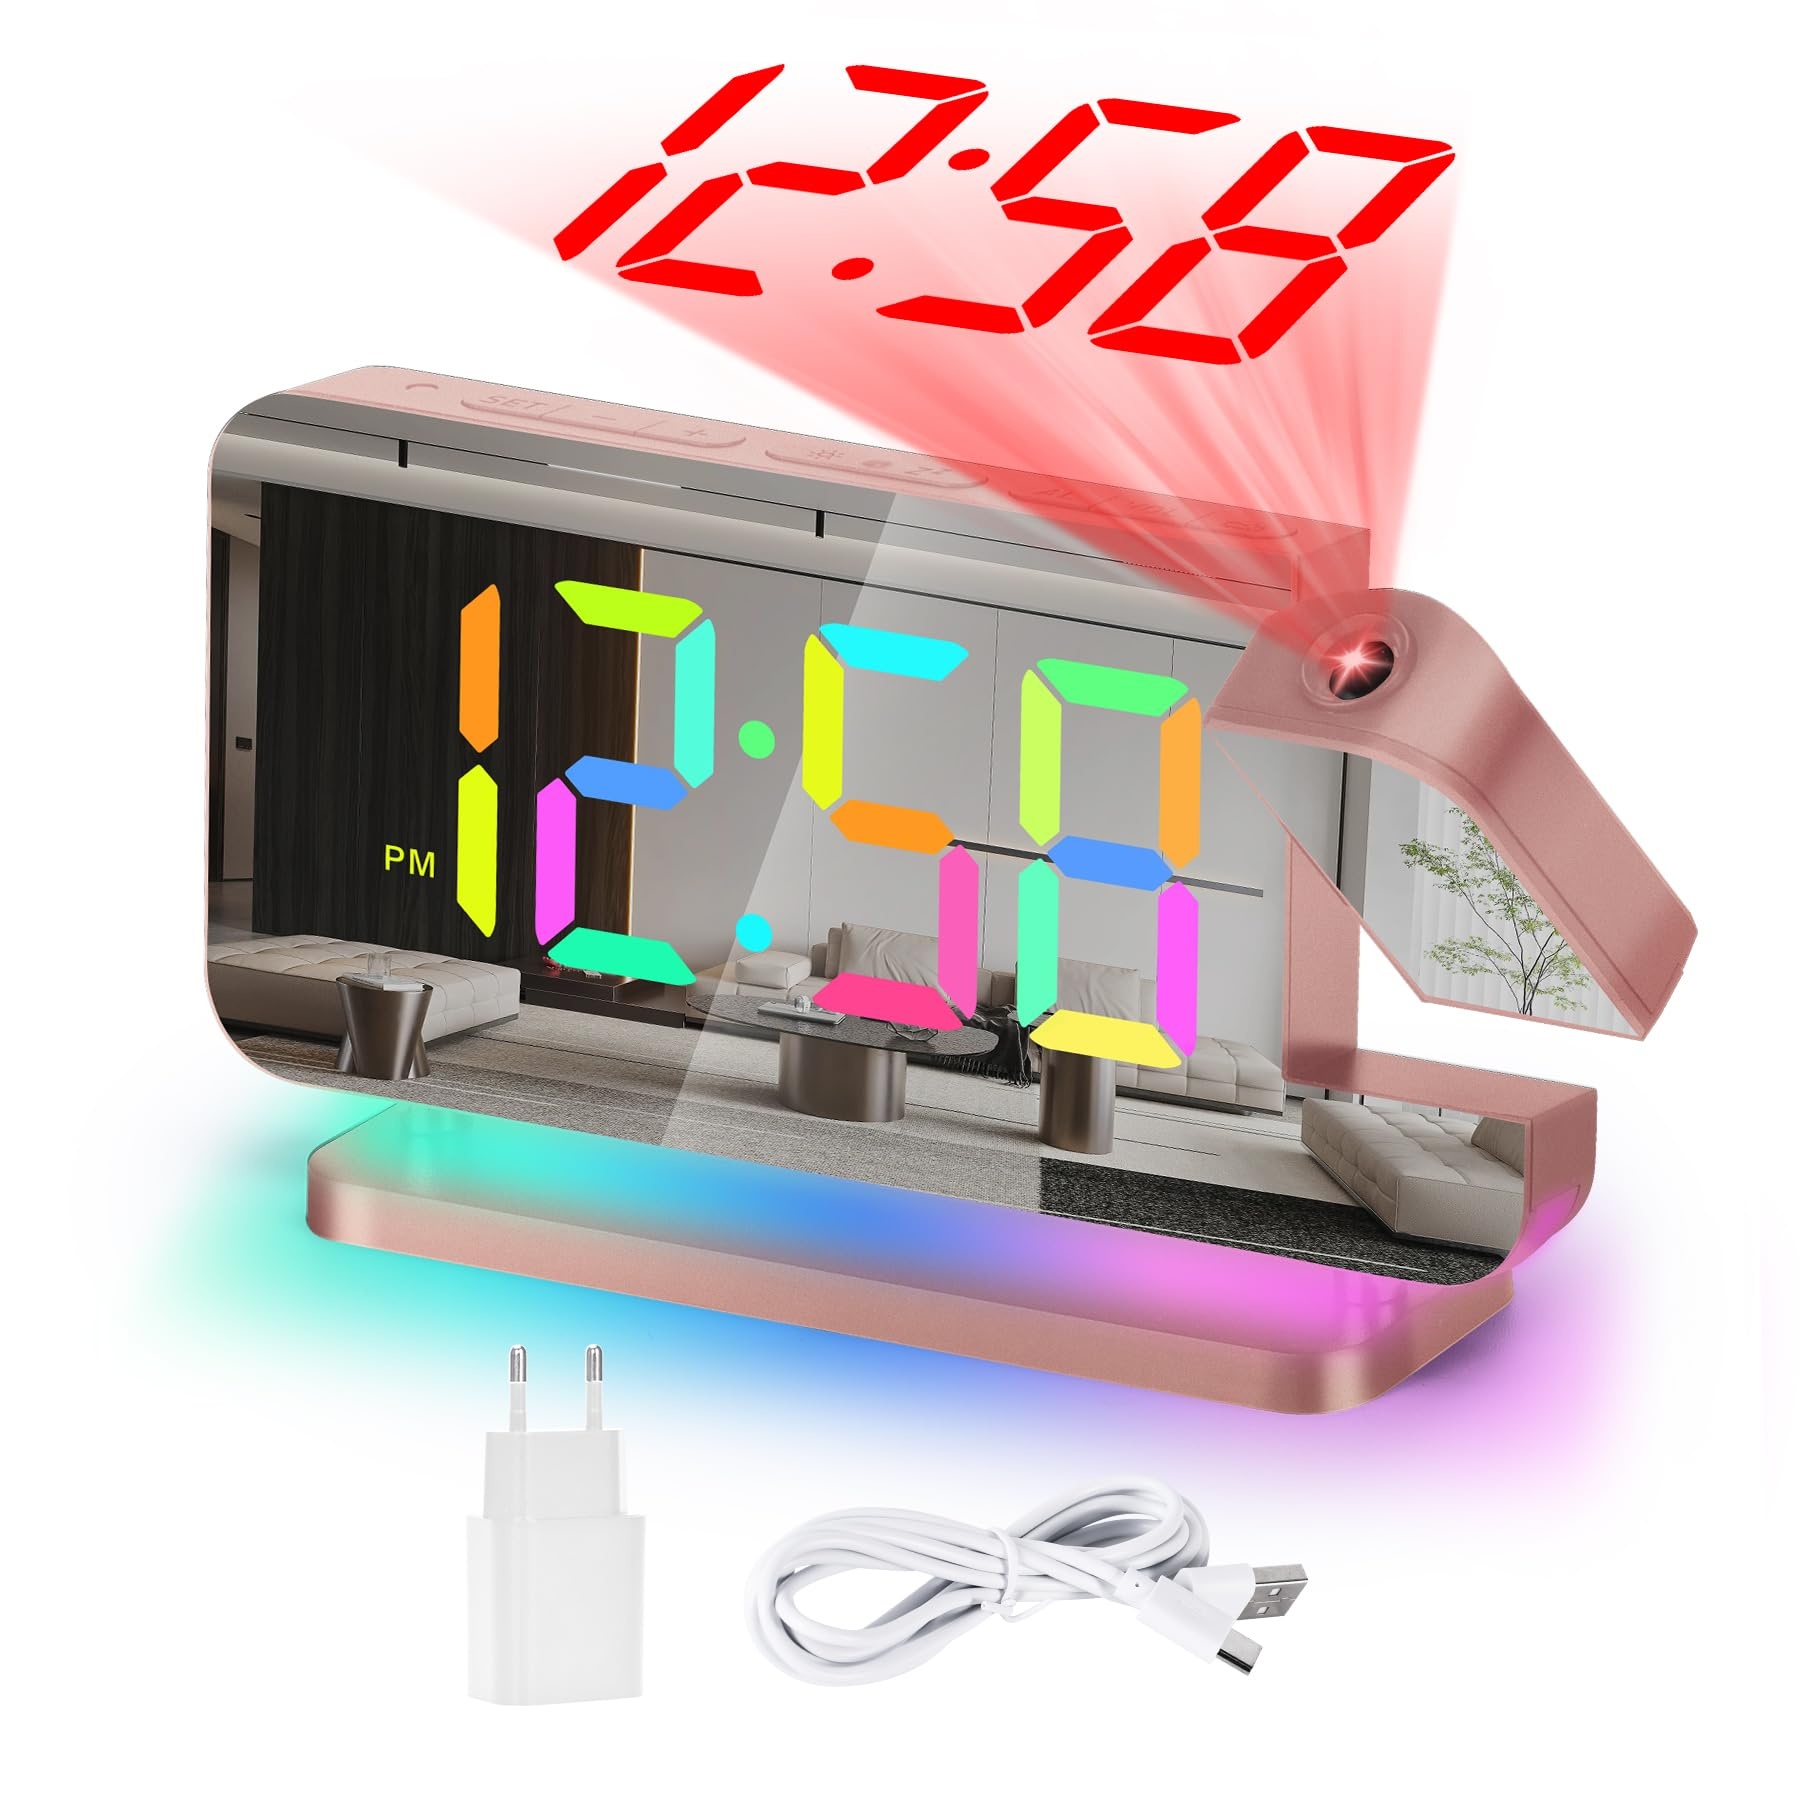 U-picks Wecker Digital,Wecker Mit Projektion,7.4"LED-Spiegeluhr mit um 180°Drehbarem Projektor,11 RGB-Farben-Digitalanzeige,10-Farben-Nachtlicht,5-Stufen Lautstärke Tischuhr Digital für Kinder,Mädchen